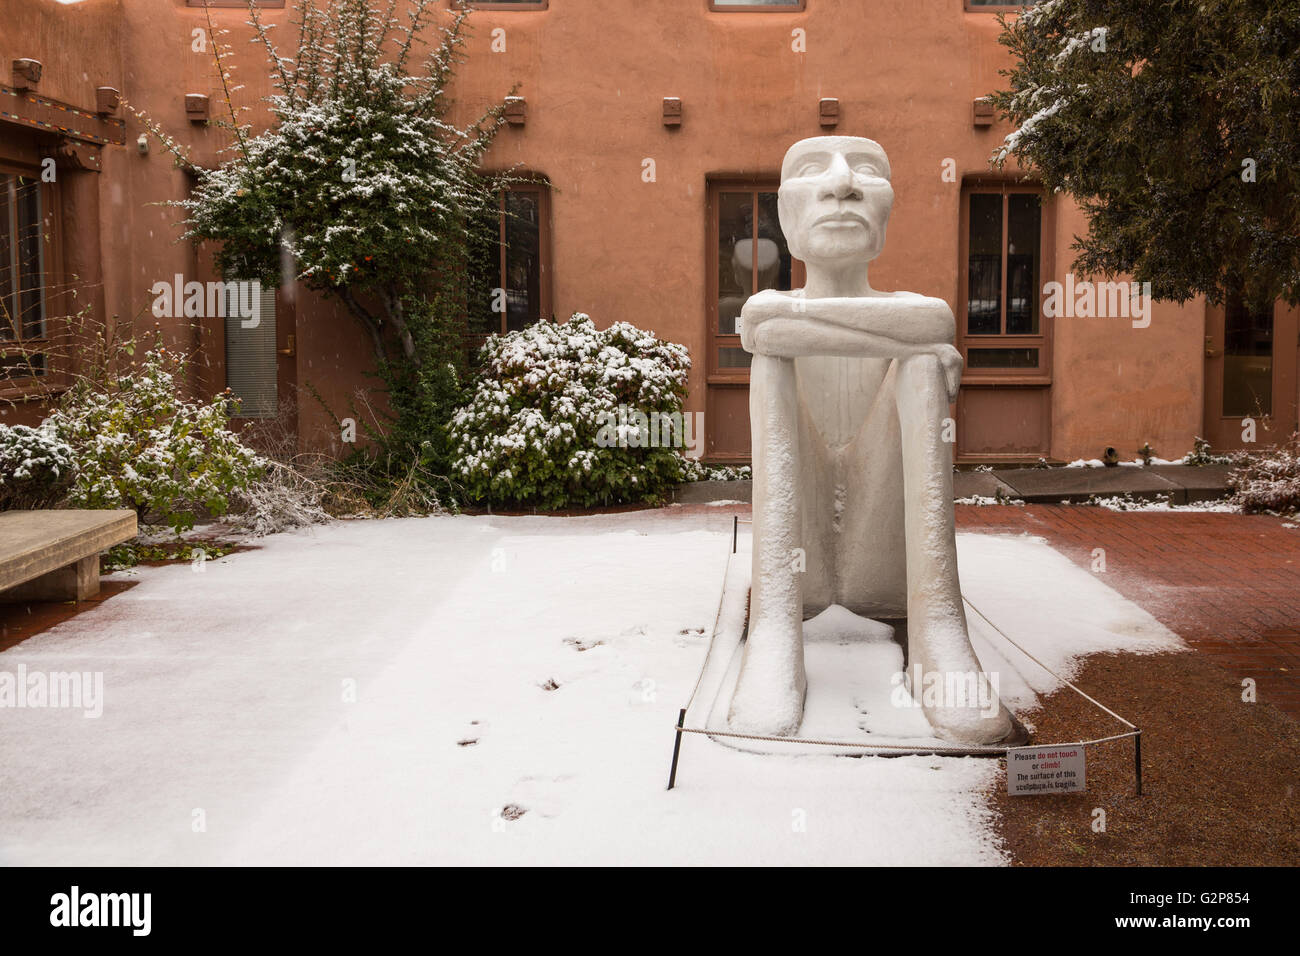 Une sculpture de neige au Museum of Contemporary Arts autochtones dans le quartier historique au cours d'une neige d'hiver, le 12 décembre 2015 à Santa Fe, Nouveau Mexique. Banque D'Images